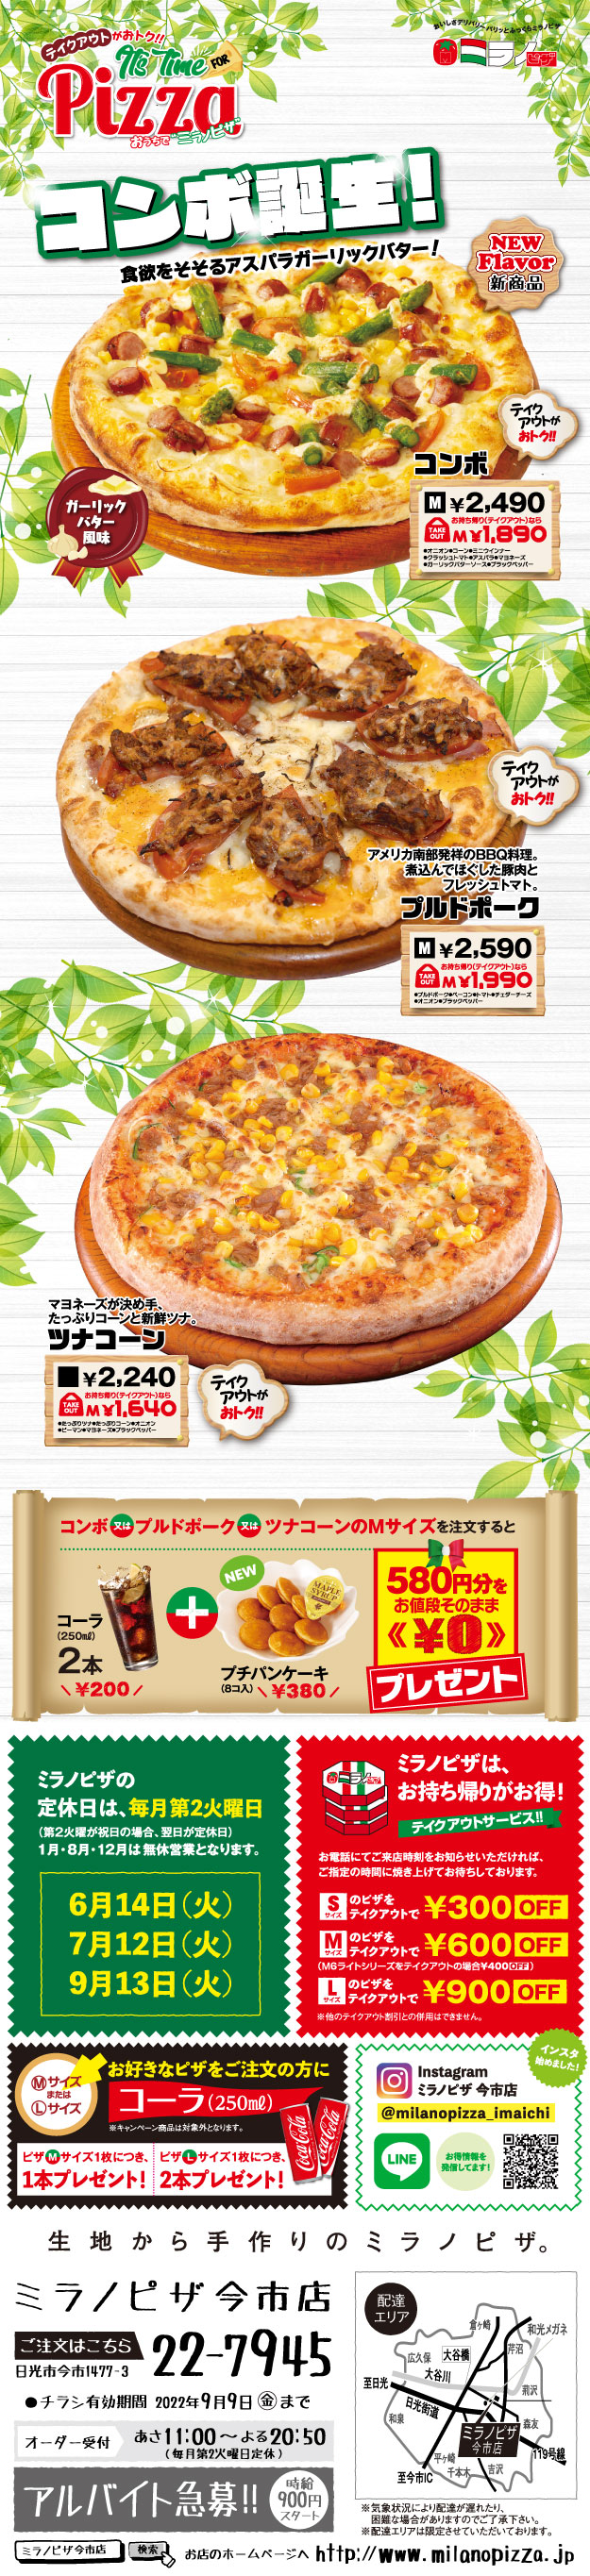 ミラノピザ三ツ星の人気ピザ!!</h1>